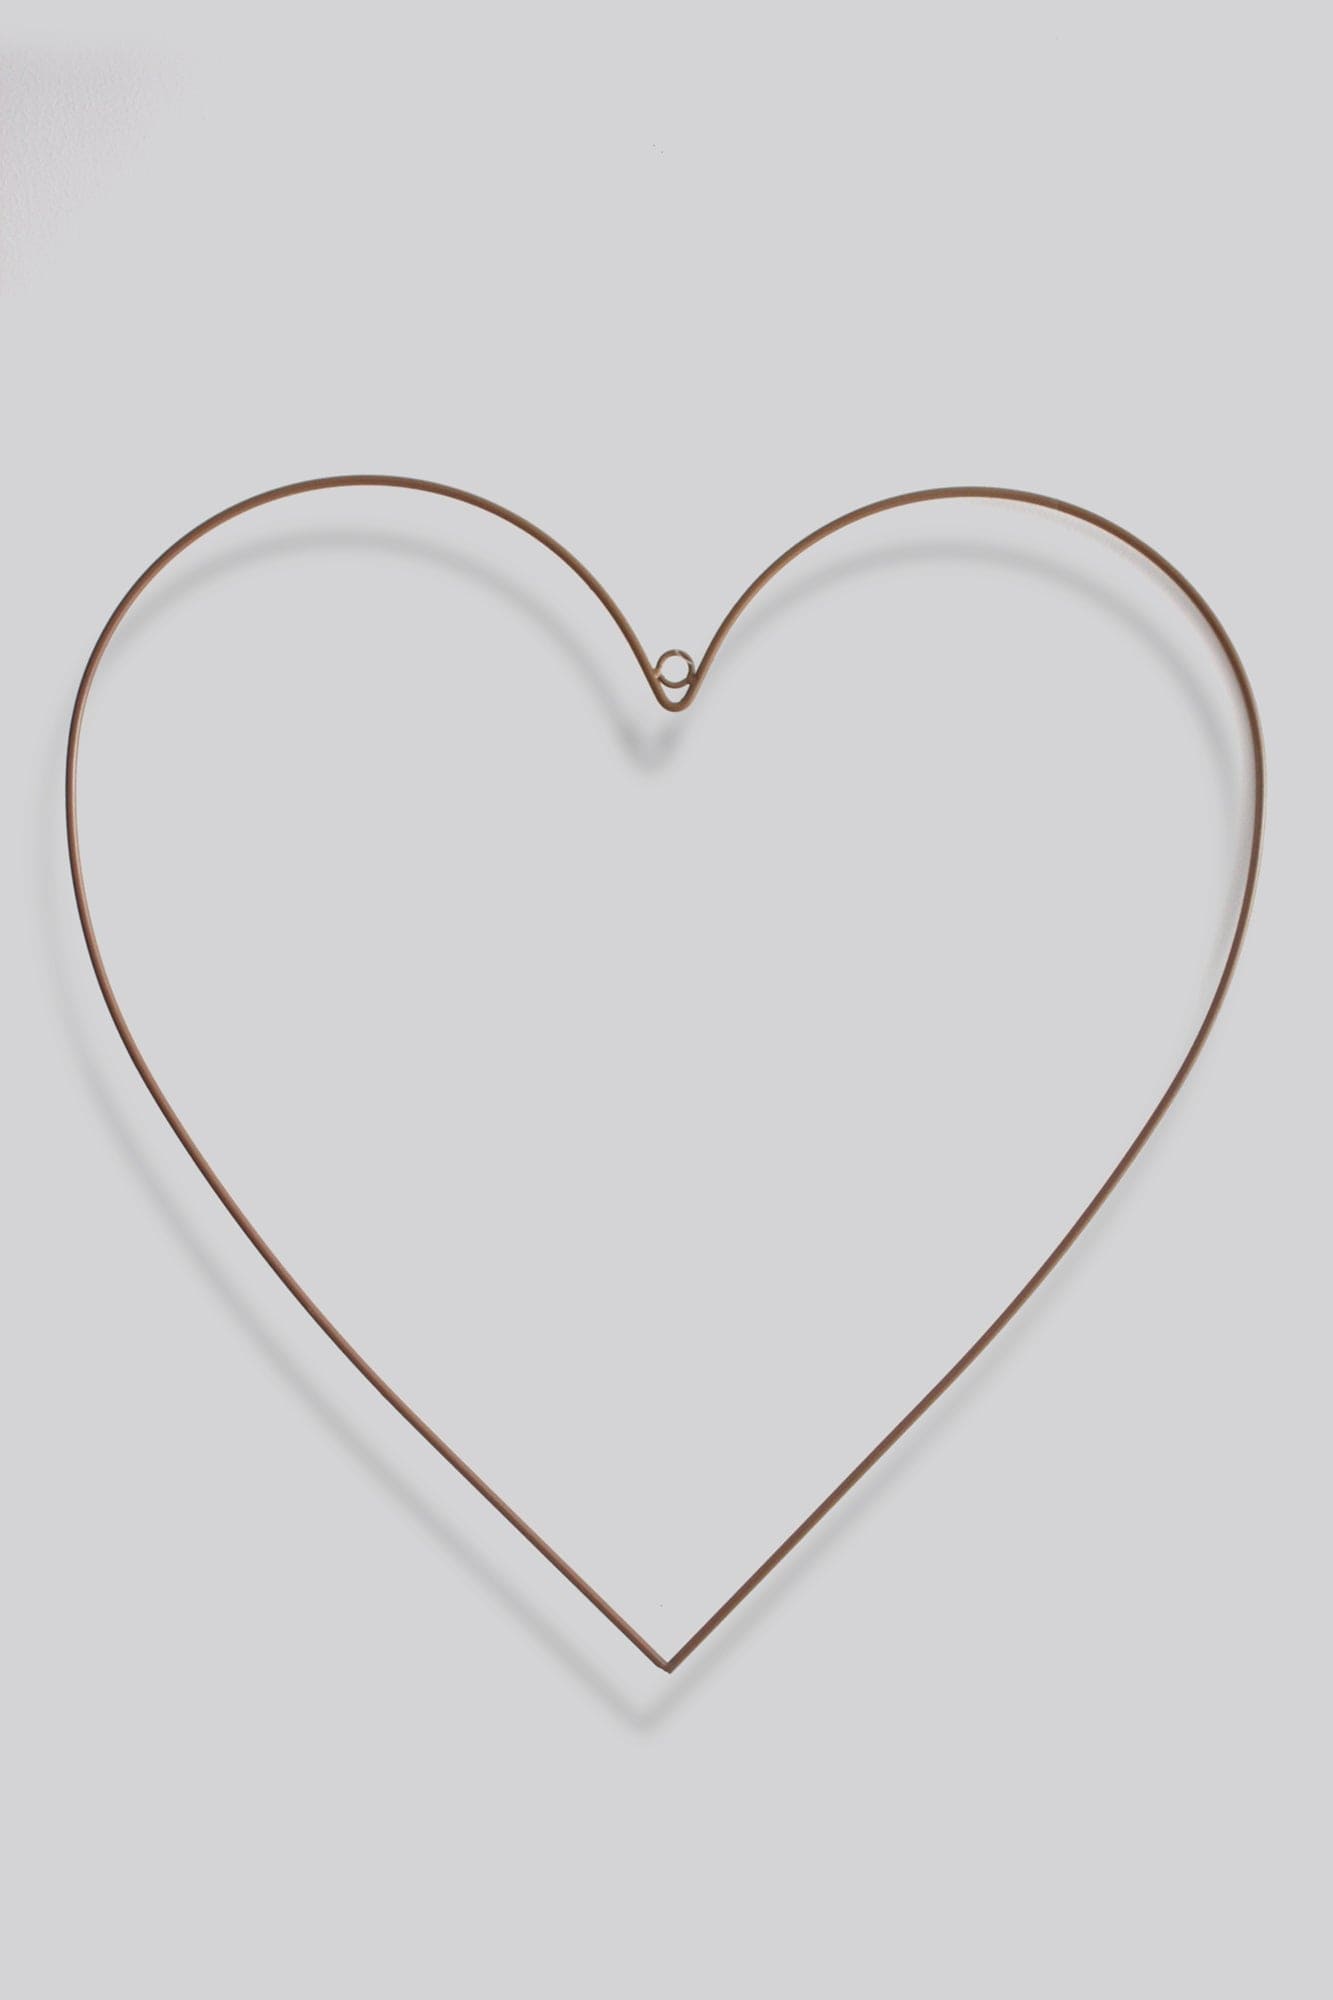 Copper Heart Frame